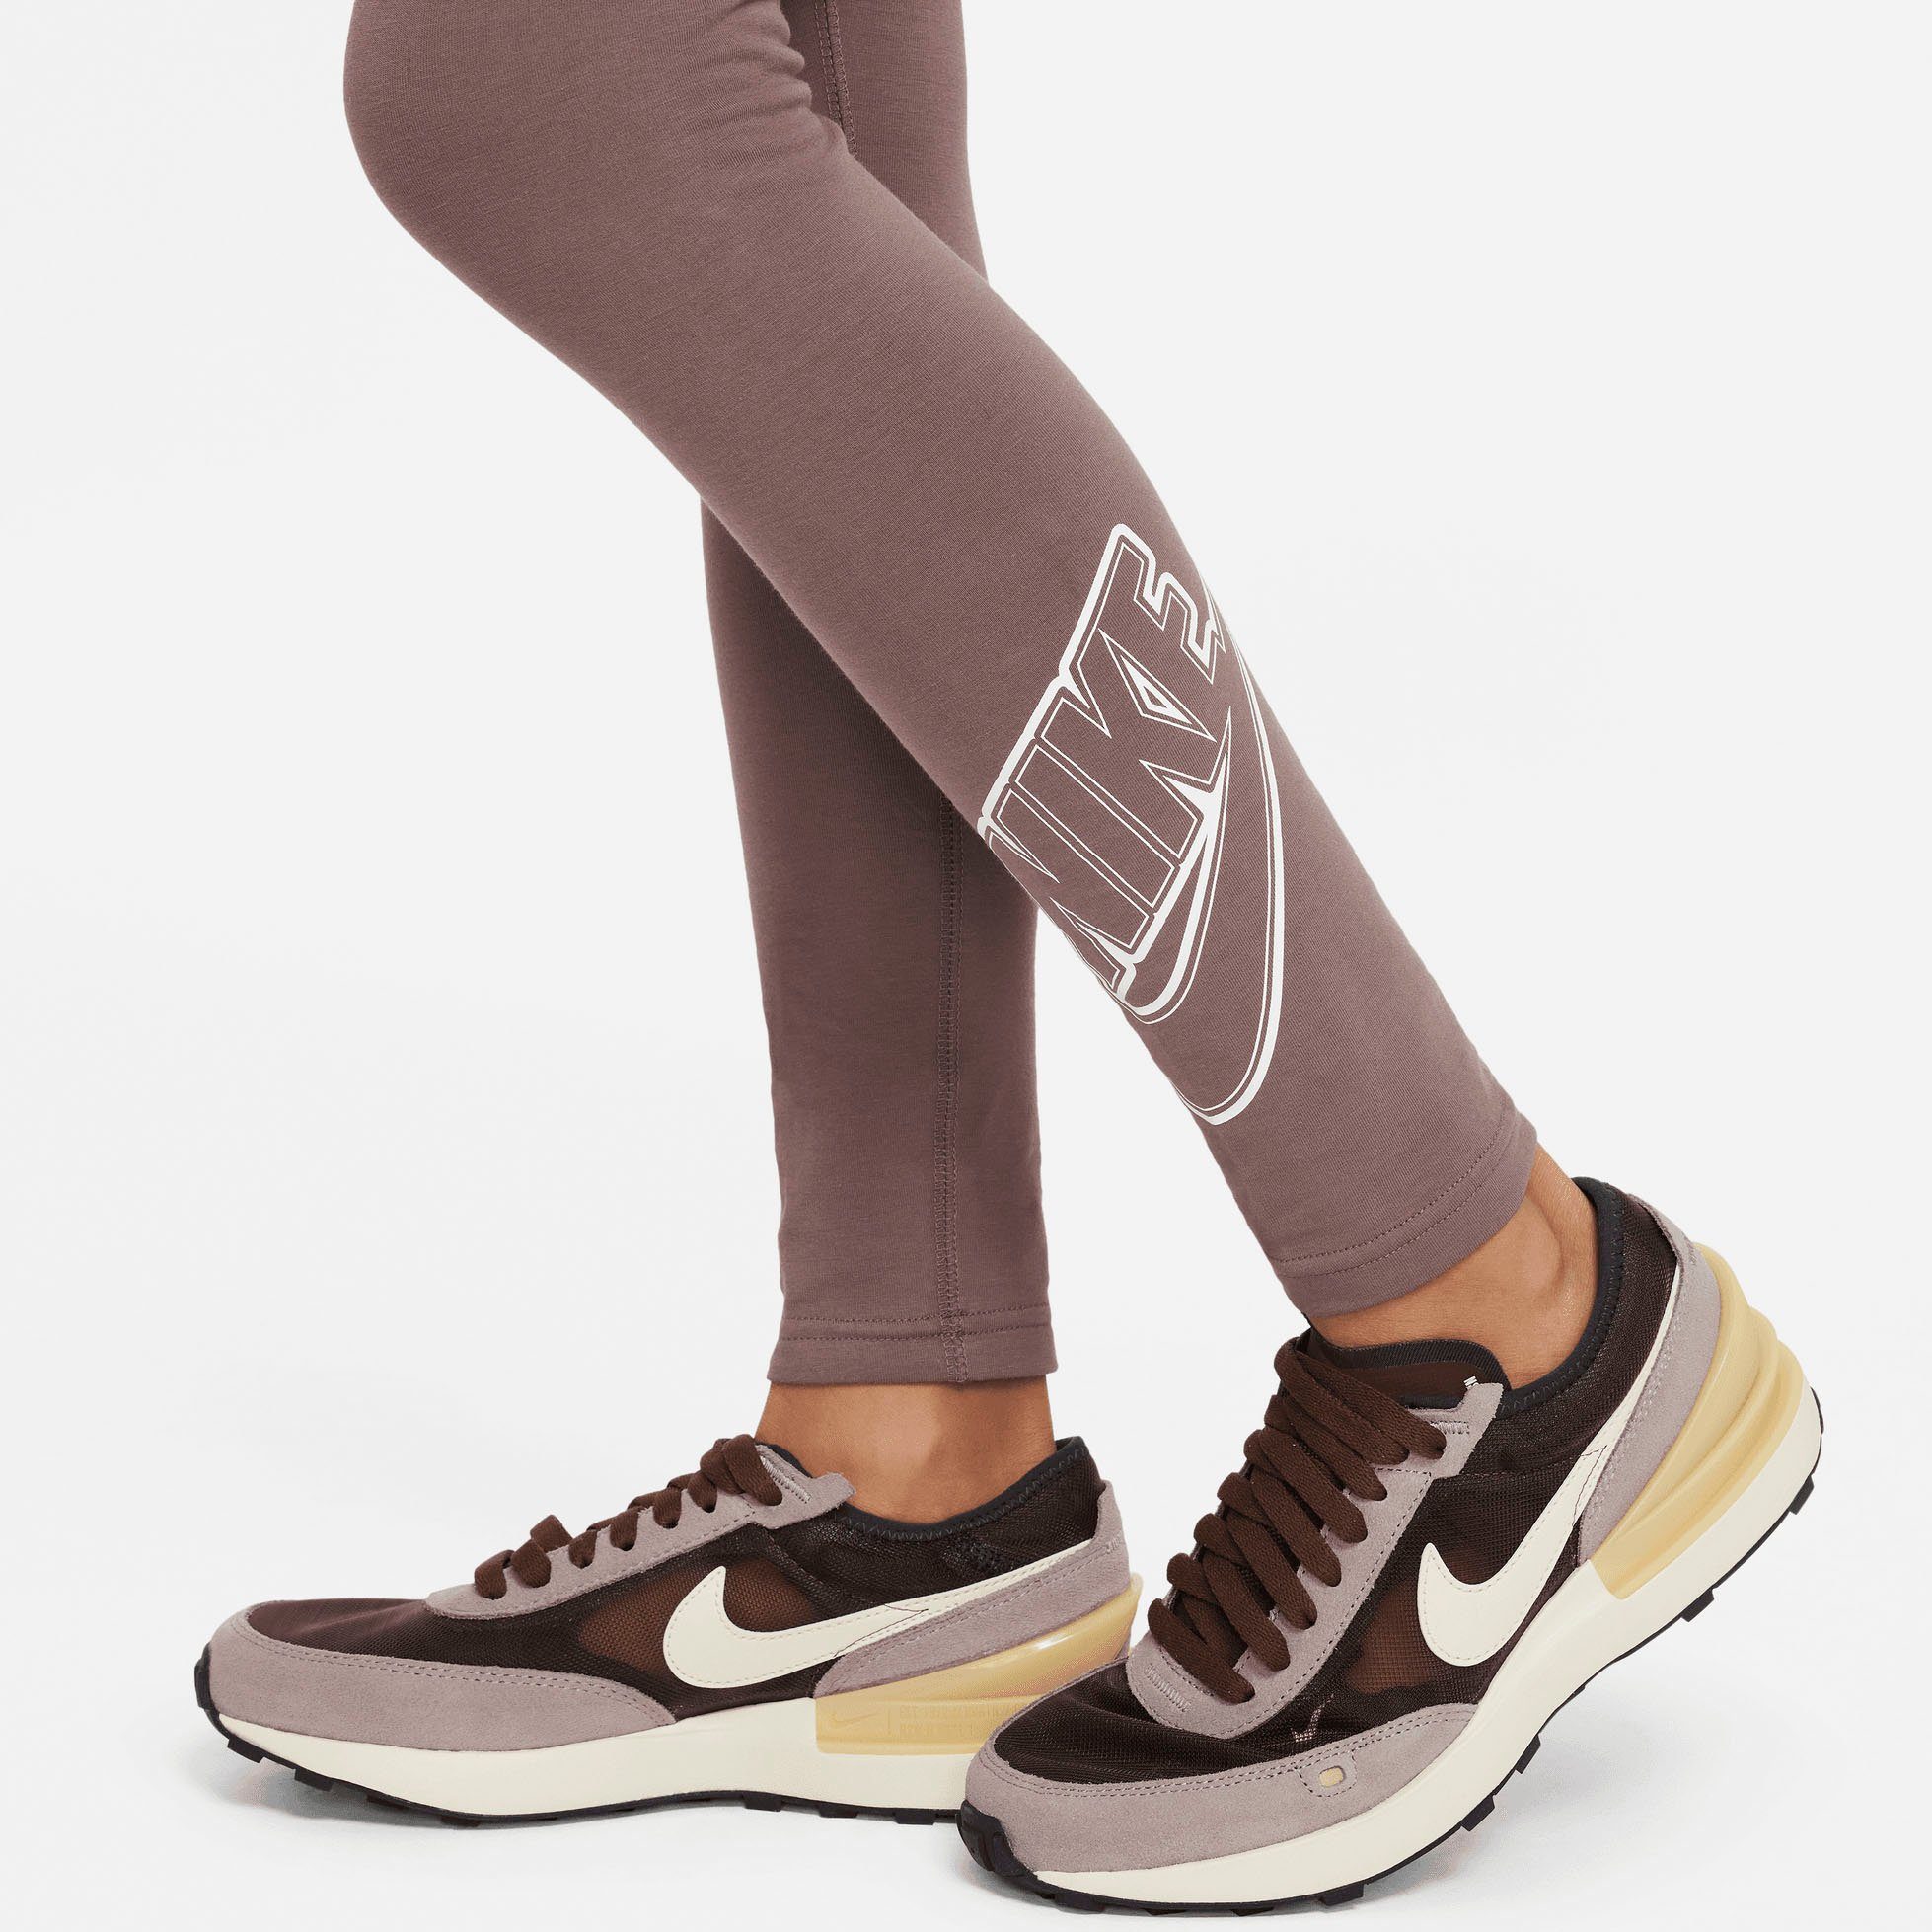 (Girls) Nike PLUM Kids' ECLIPSE/WHITE Graphic Big Favorites Sportswear Leggings Leggings